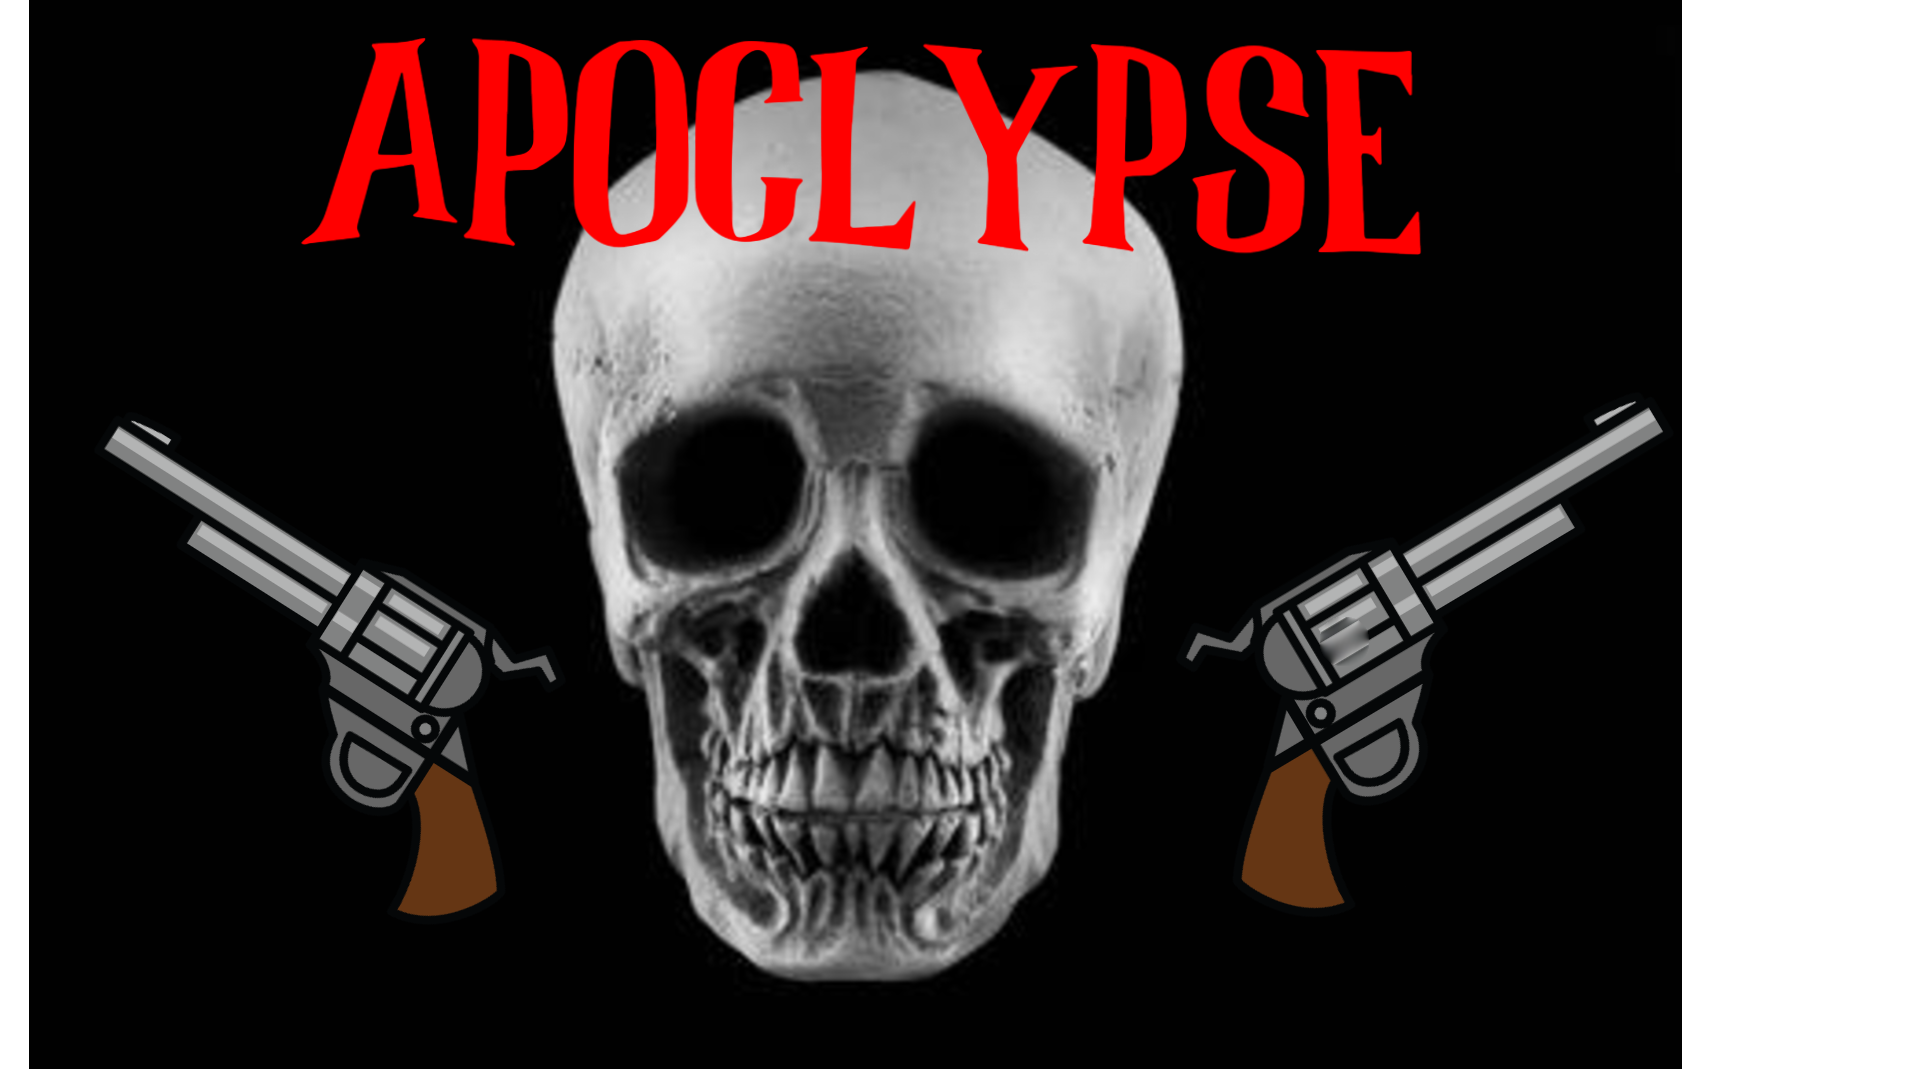 Apocalypse by GameBreakersStudio